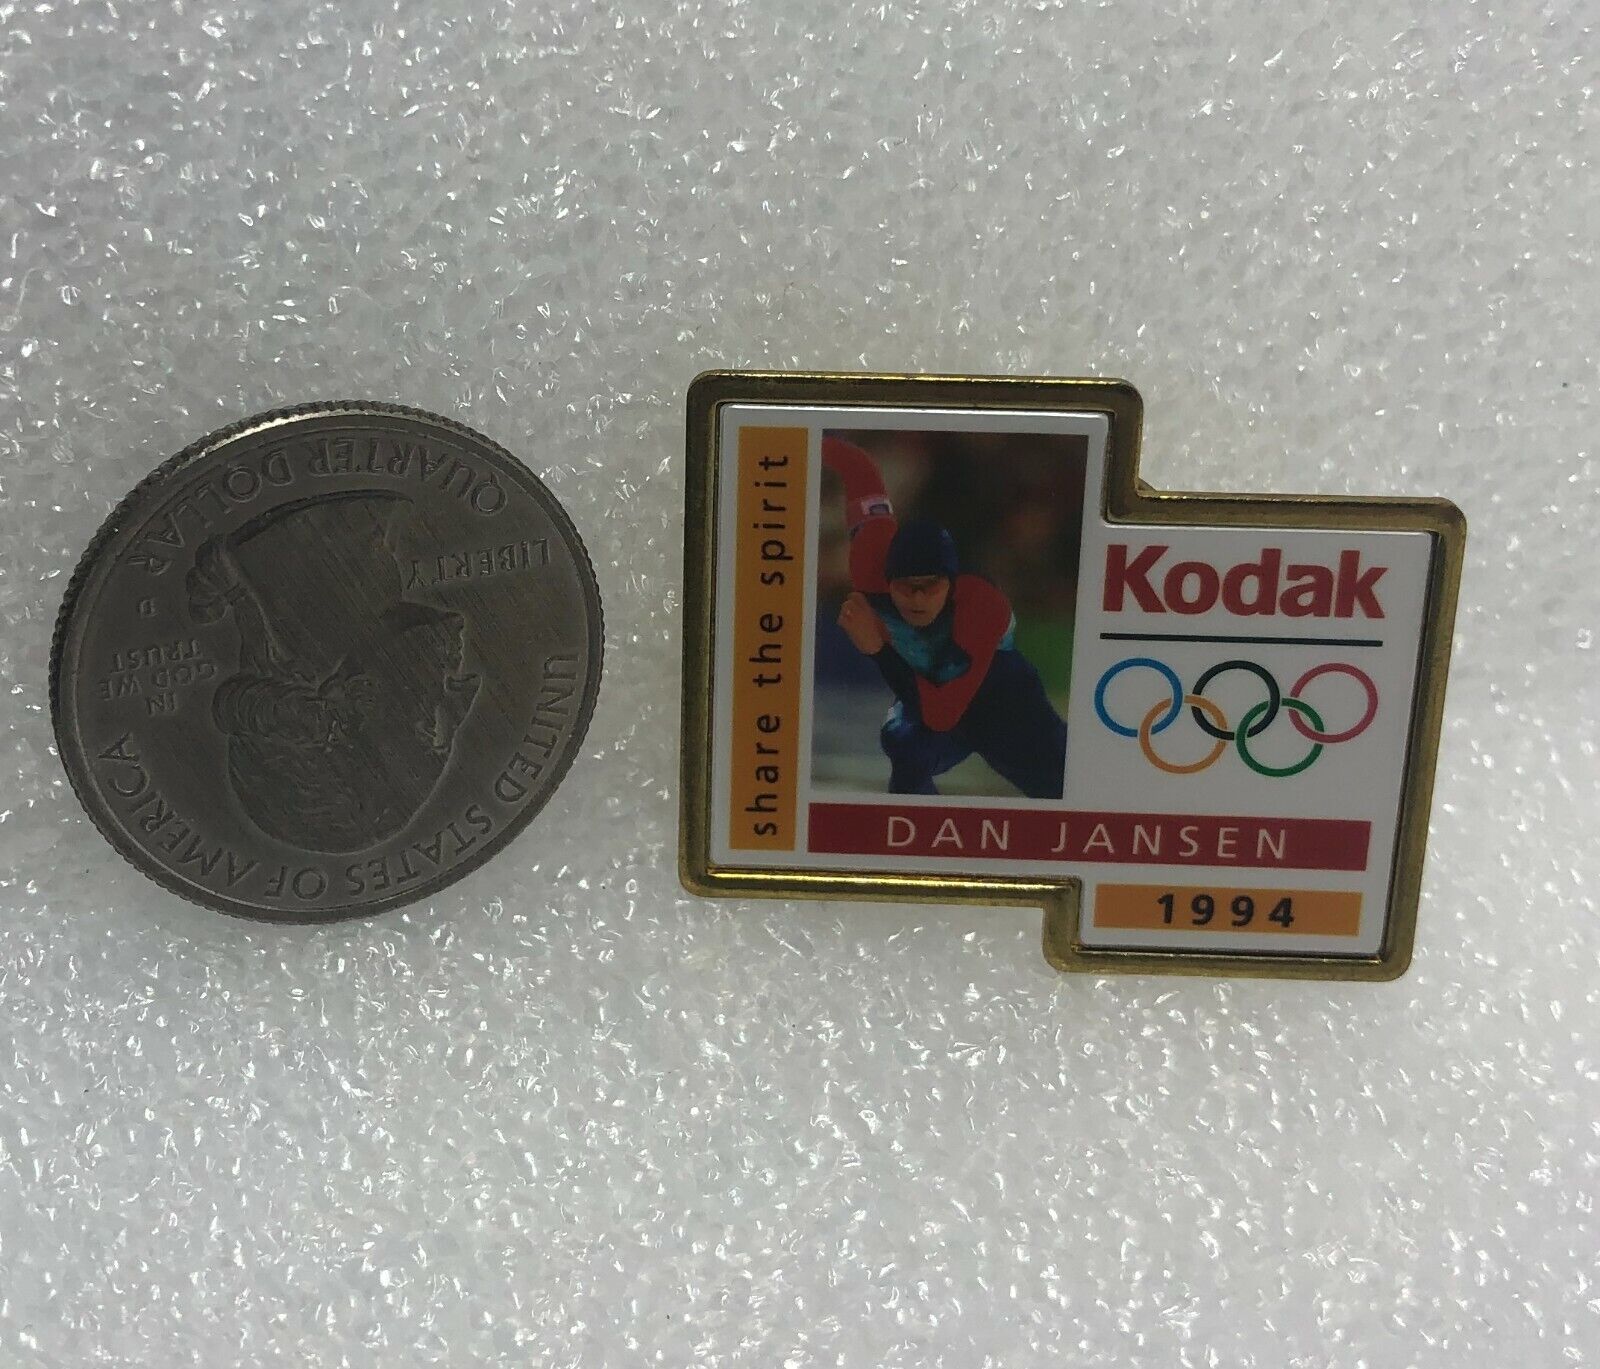 1998 Kodak Olympic Dan Jansen Pin